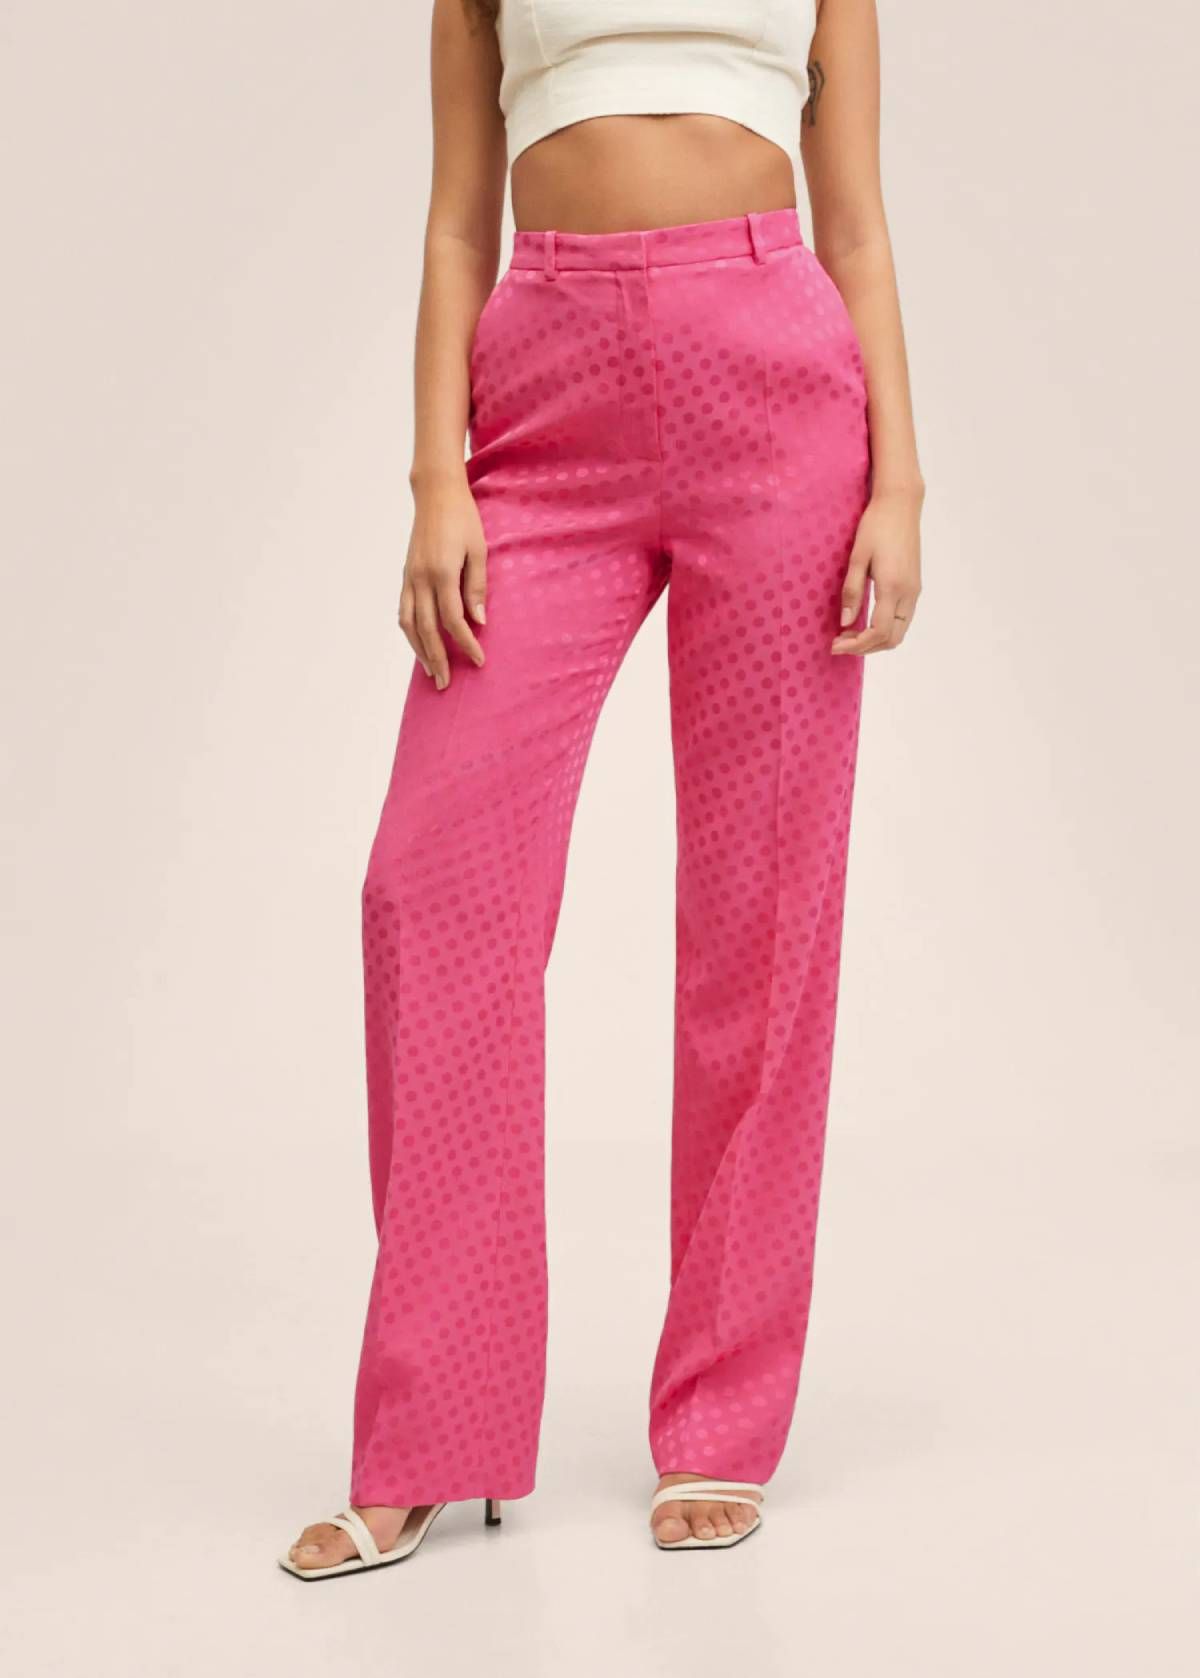 Pantalón de traje rosa fucsia con lunares, de Mango